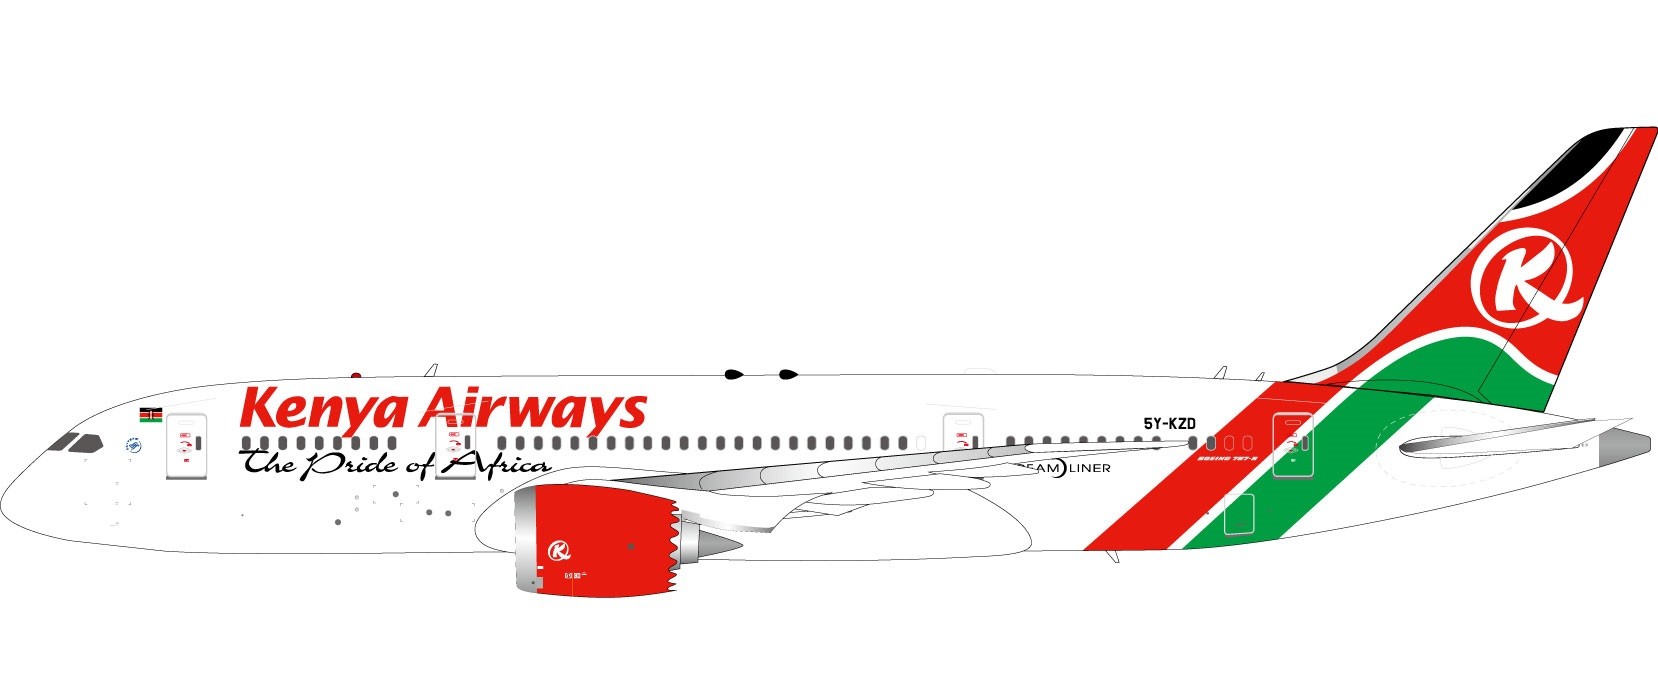 InFlight Die-Cast Models Kenya Airways B787-8 Dreamliner w/Stand 